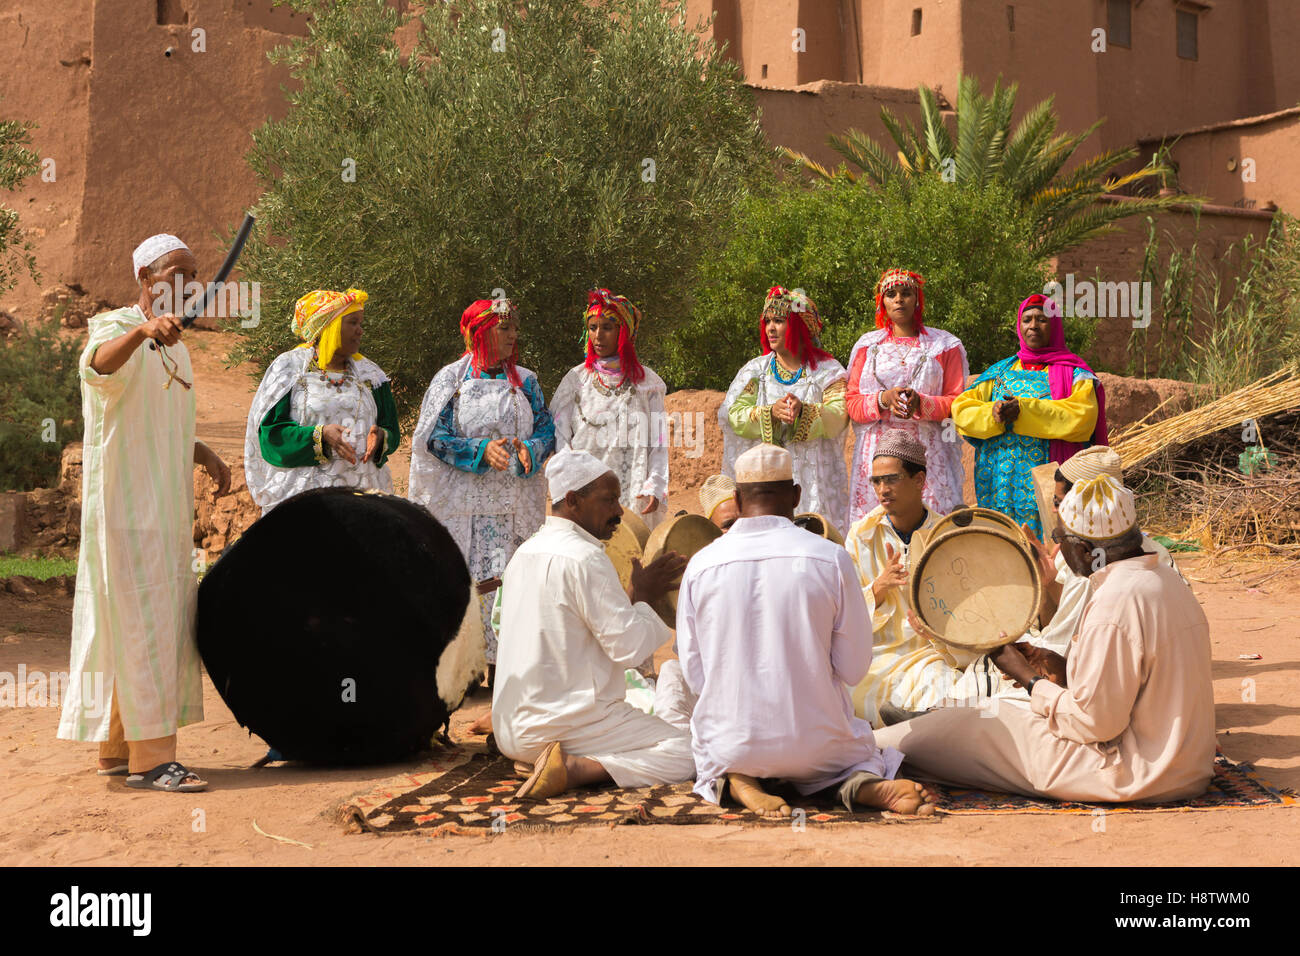 Popolo berbero nella cerimonia di nozze con i loro vestiti tradizionali, ballano con la tradizionale musica berbera,Ouarzazate in Marocco Foto Stock